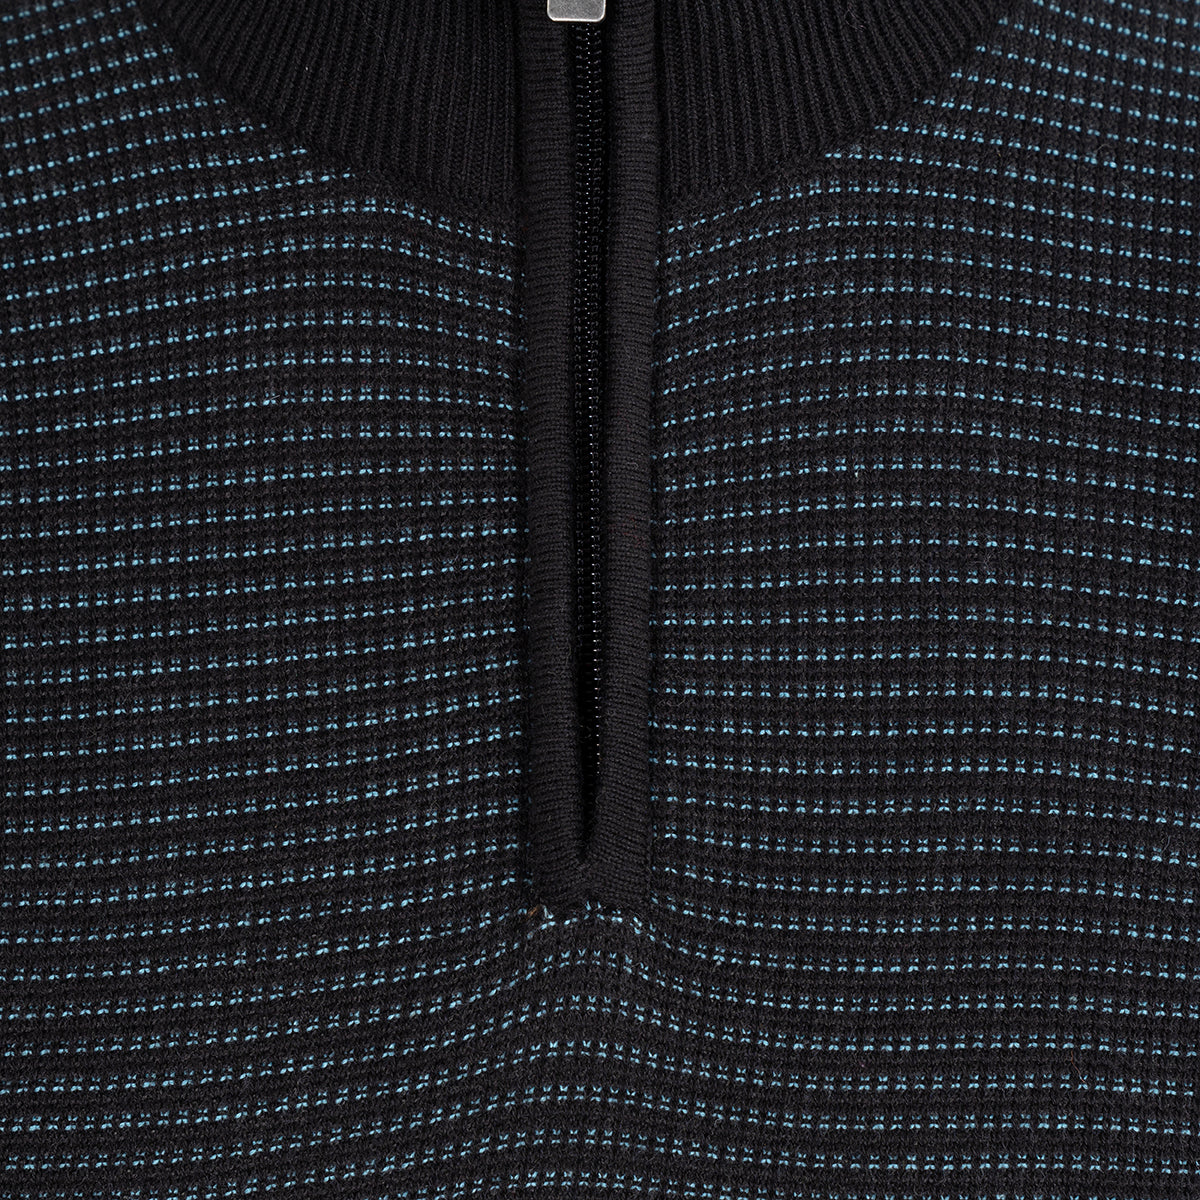 Sweater con cremallera en negro de Perry Ellis SW00105031